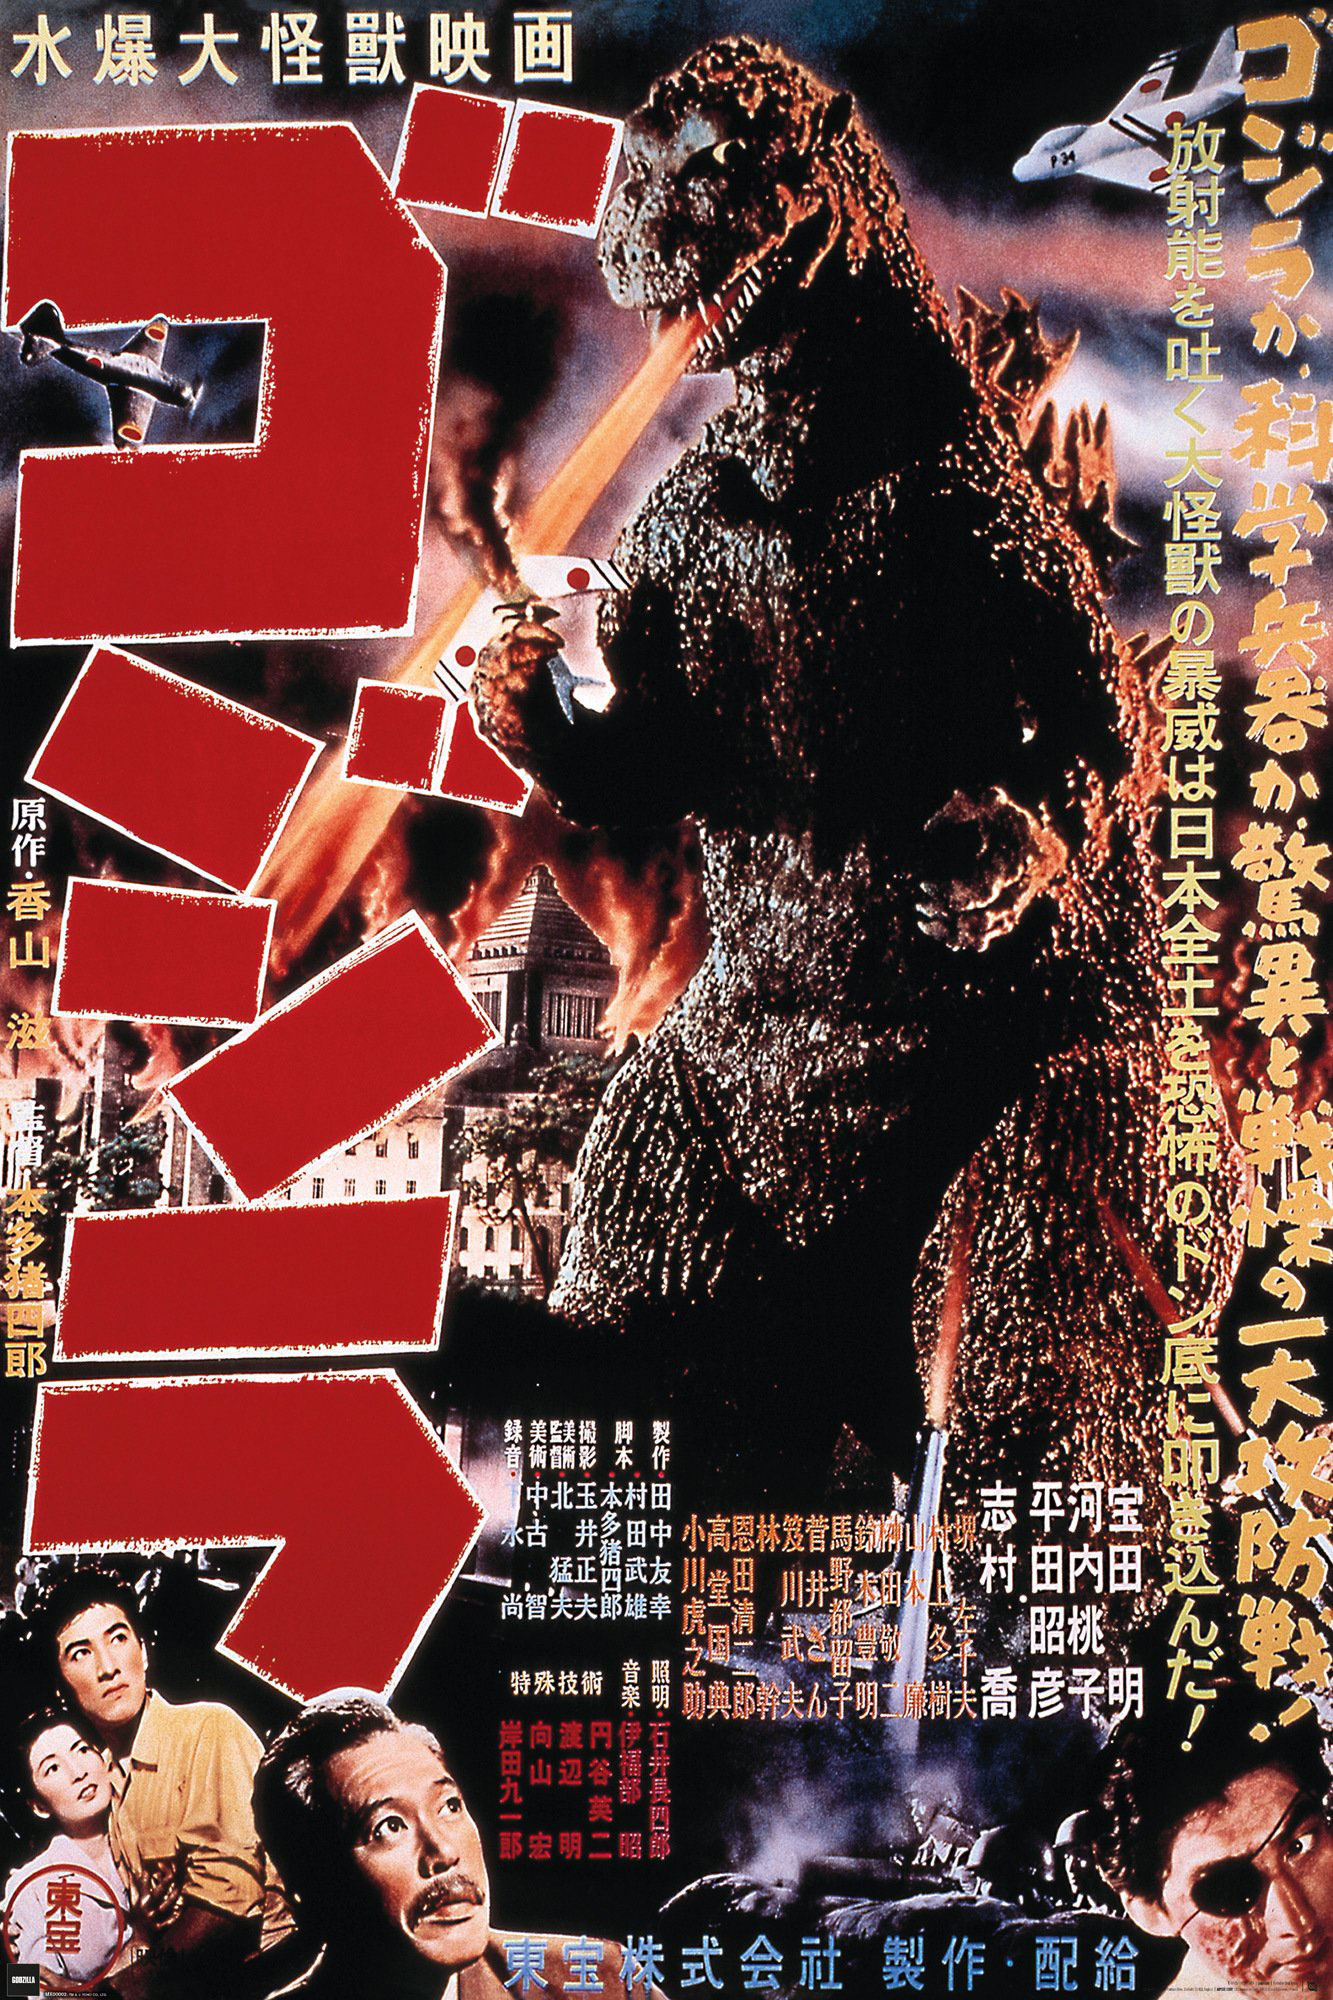 Godzilla 1954 -